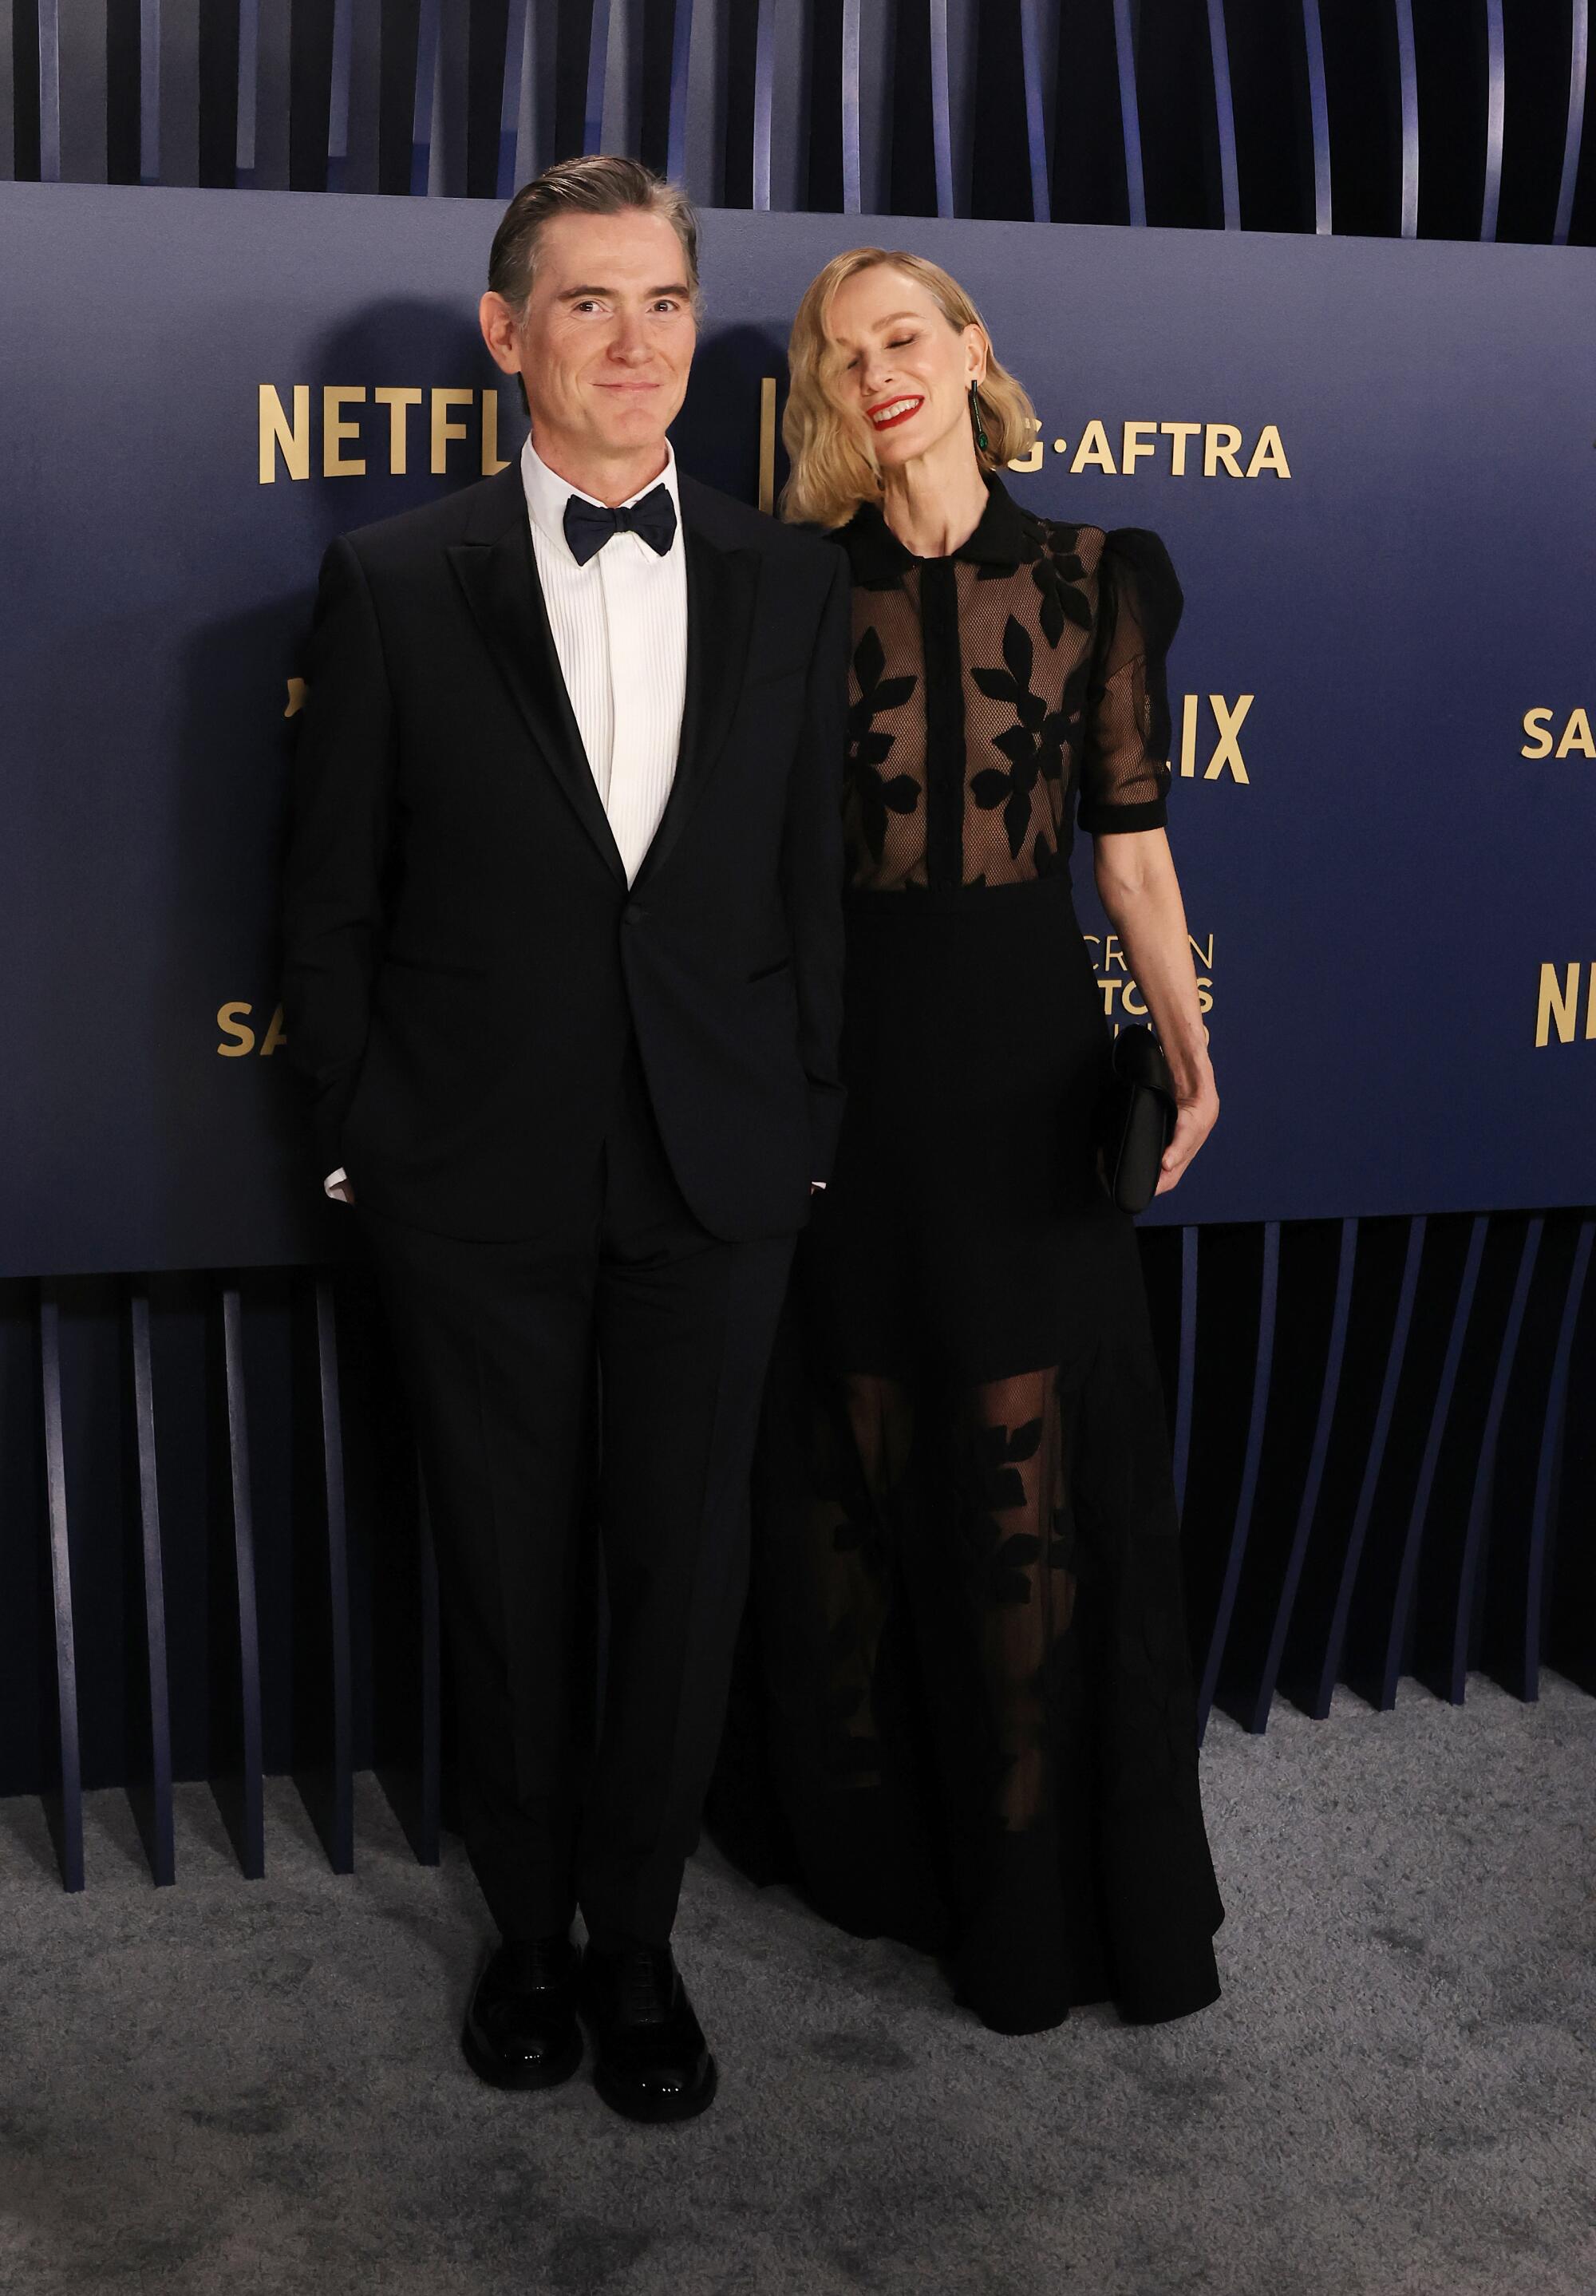 Billy Crudup and Naomi Watts pose at the SAG Awards.